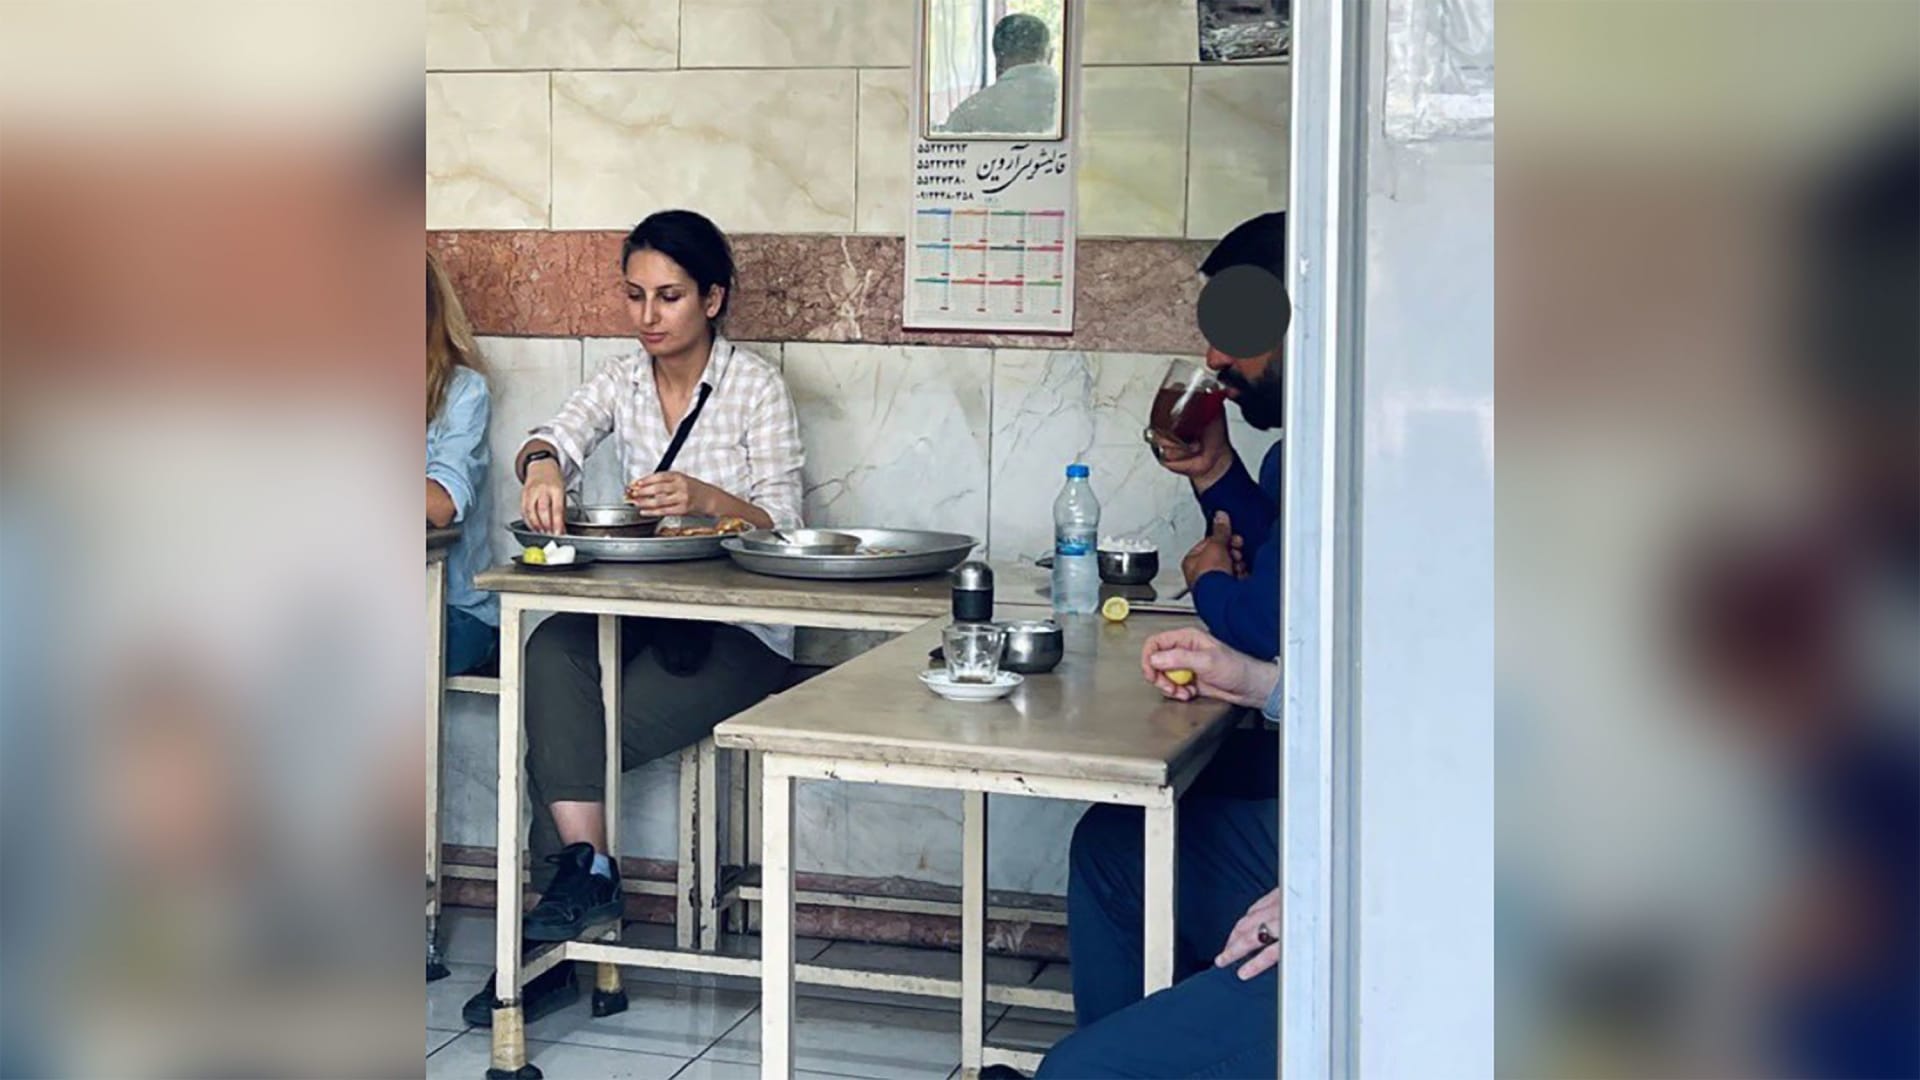 صورة تم تداولها على الإنترنت تظهر دنيا راد خلال تناولها الطعام في مطعم بدون حجاب